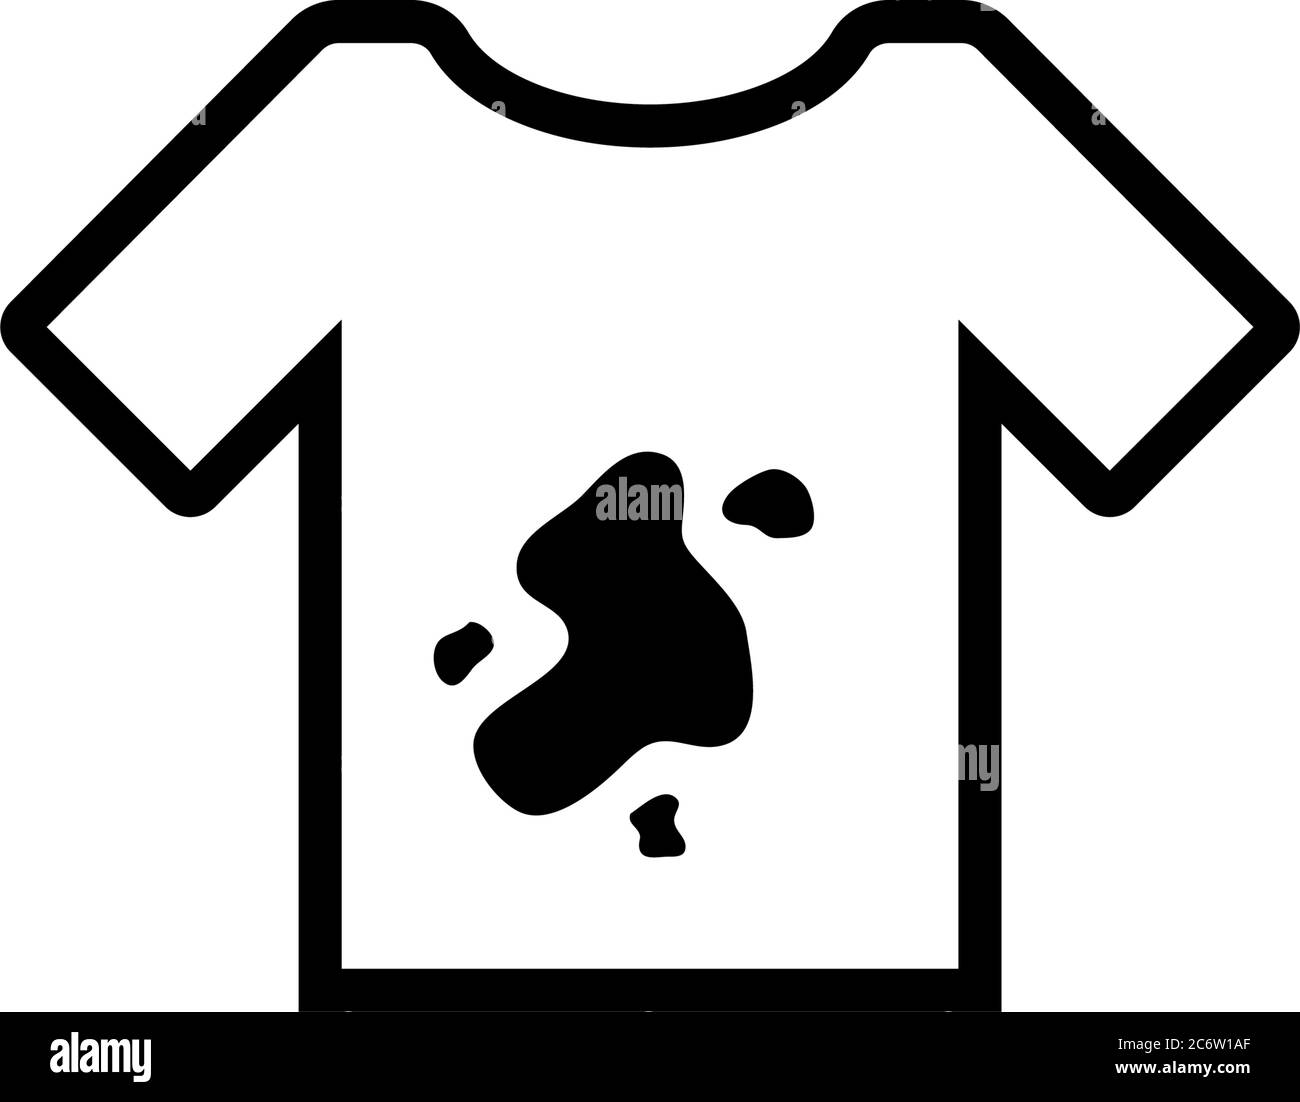 Stock-Vektorgrafik Vektorgrafik. weißem für Schmutziges Symbols Symbol T-Shirt mit Einfaches schwarzes Schmutz Schmutz. Abbildung des T-Shirt, T-Shirt flache Flecken T-Shirt, s auf Schmutziges Flecken - mit Alamy Hintergrund.